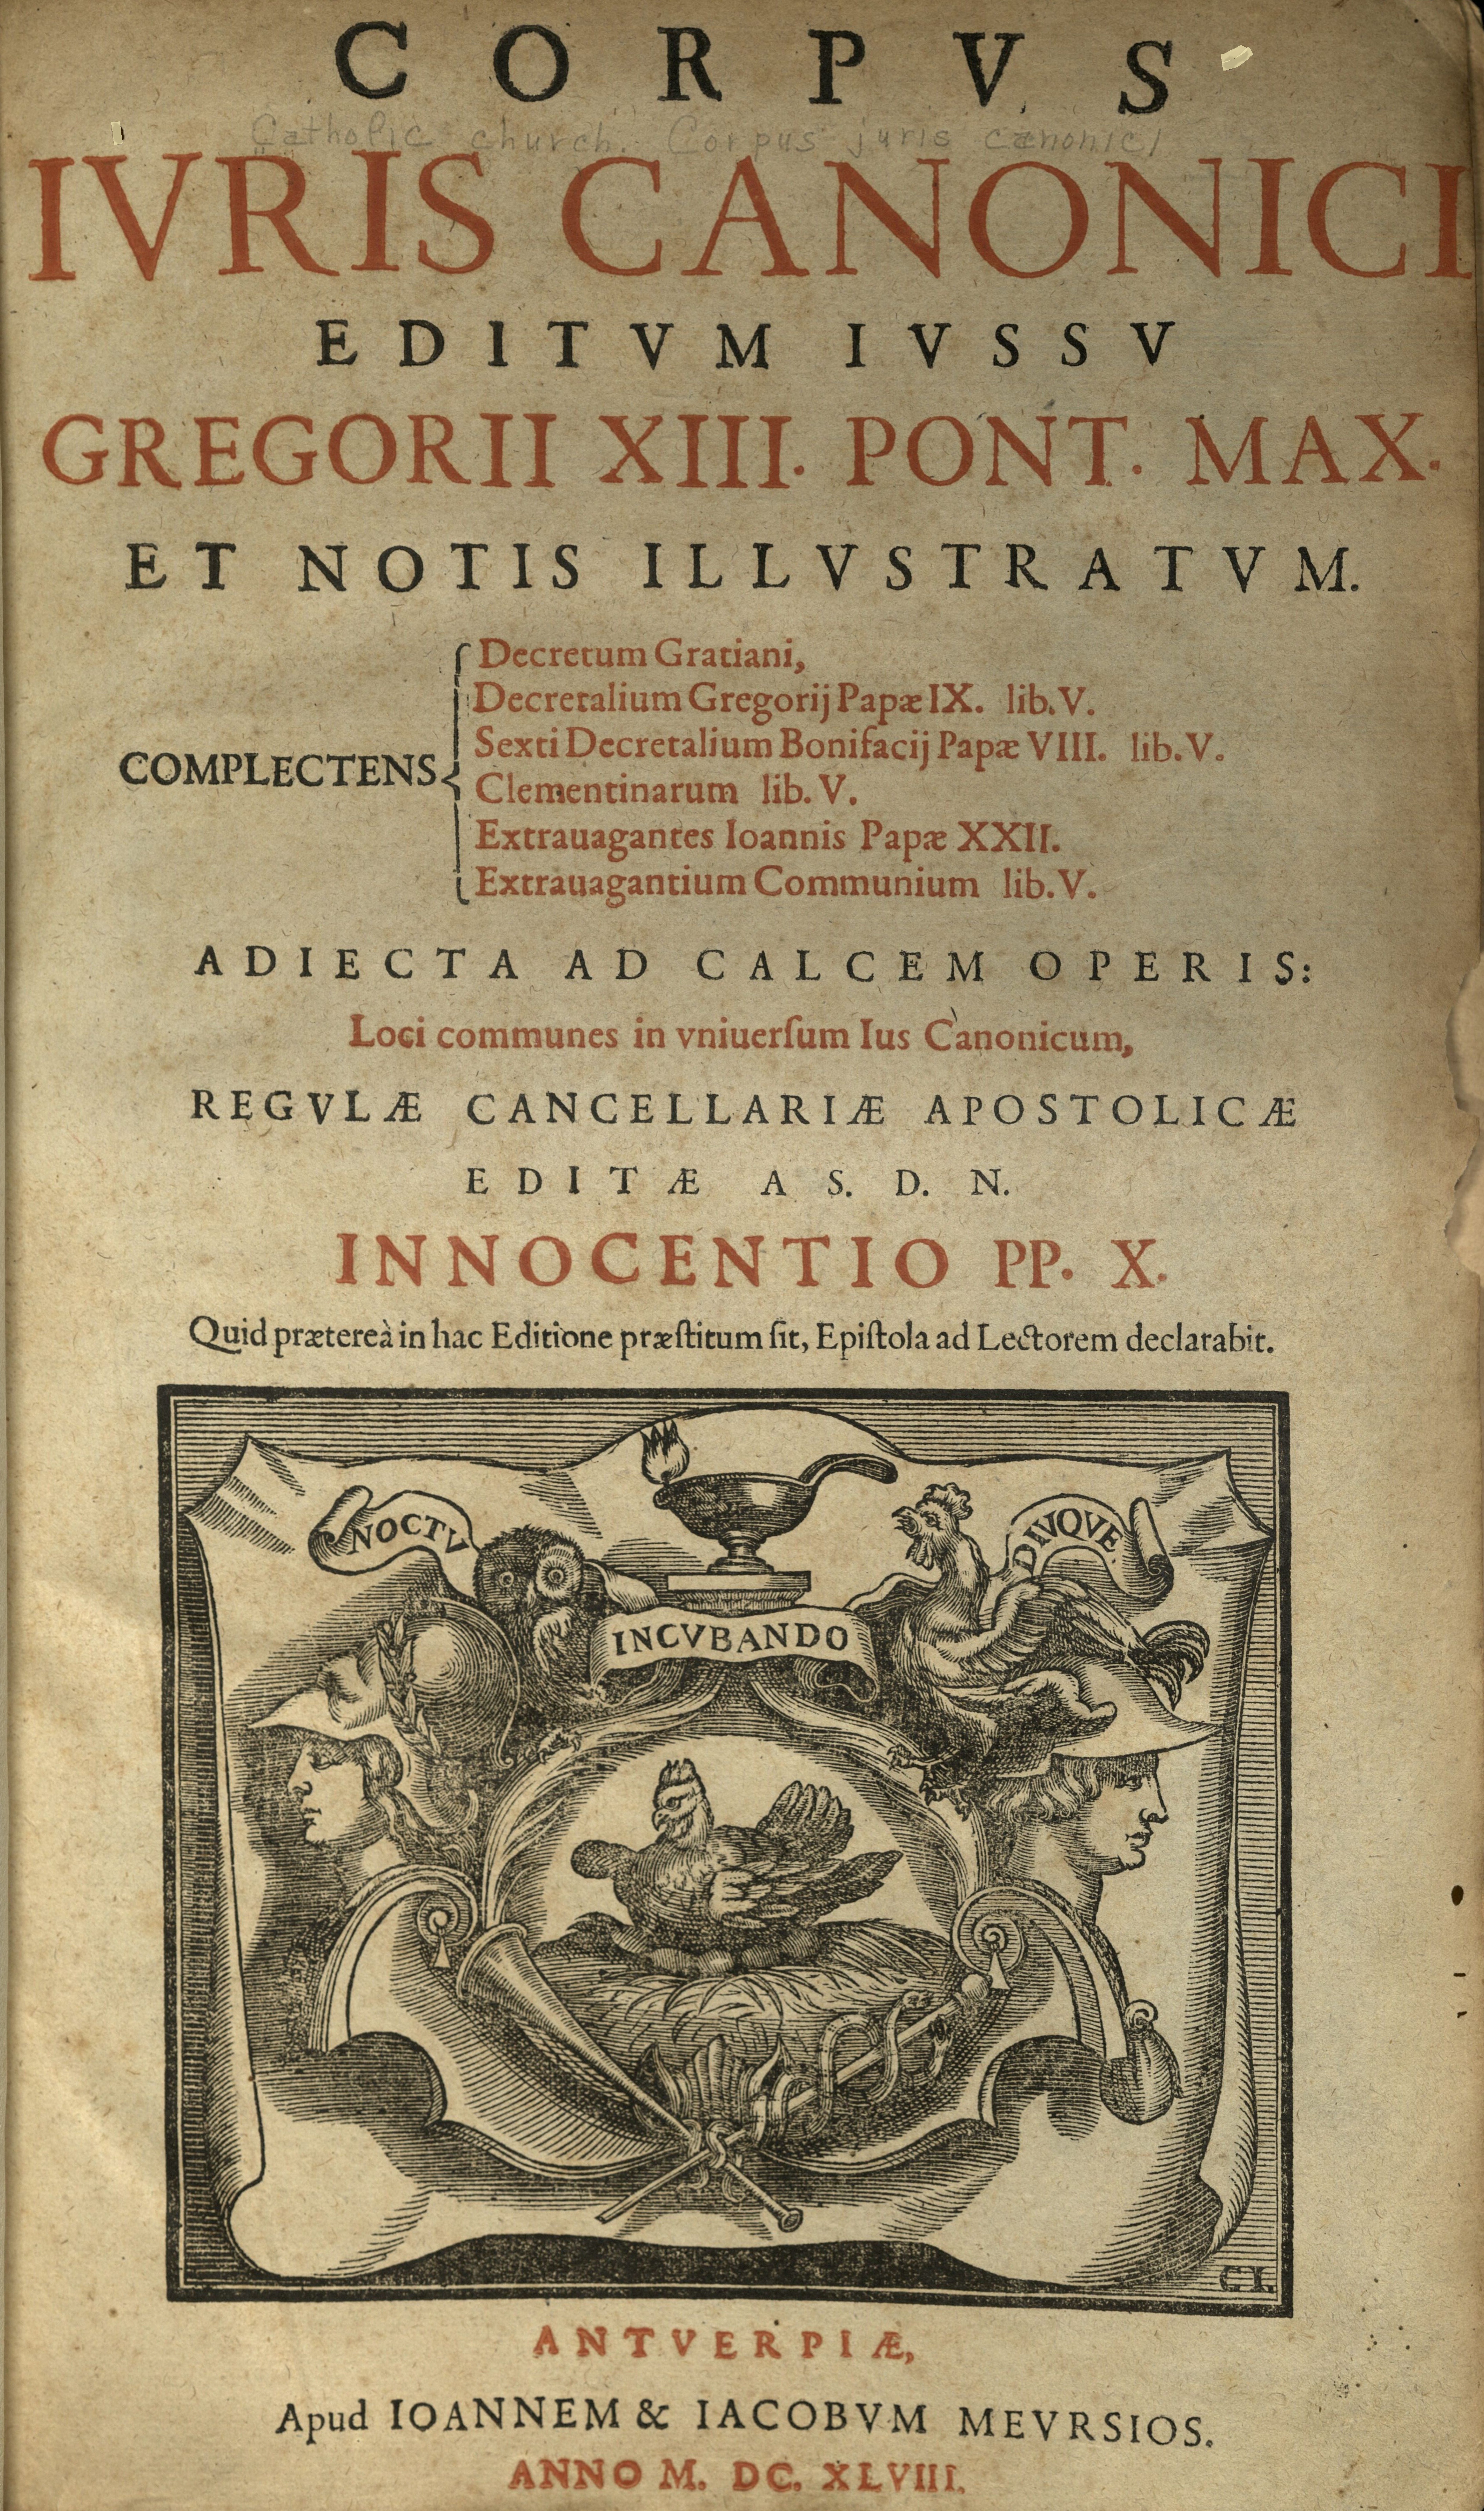 Corpus Iuris Canonici. Antverpiae 1648.